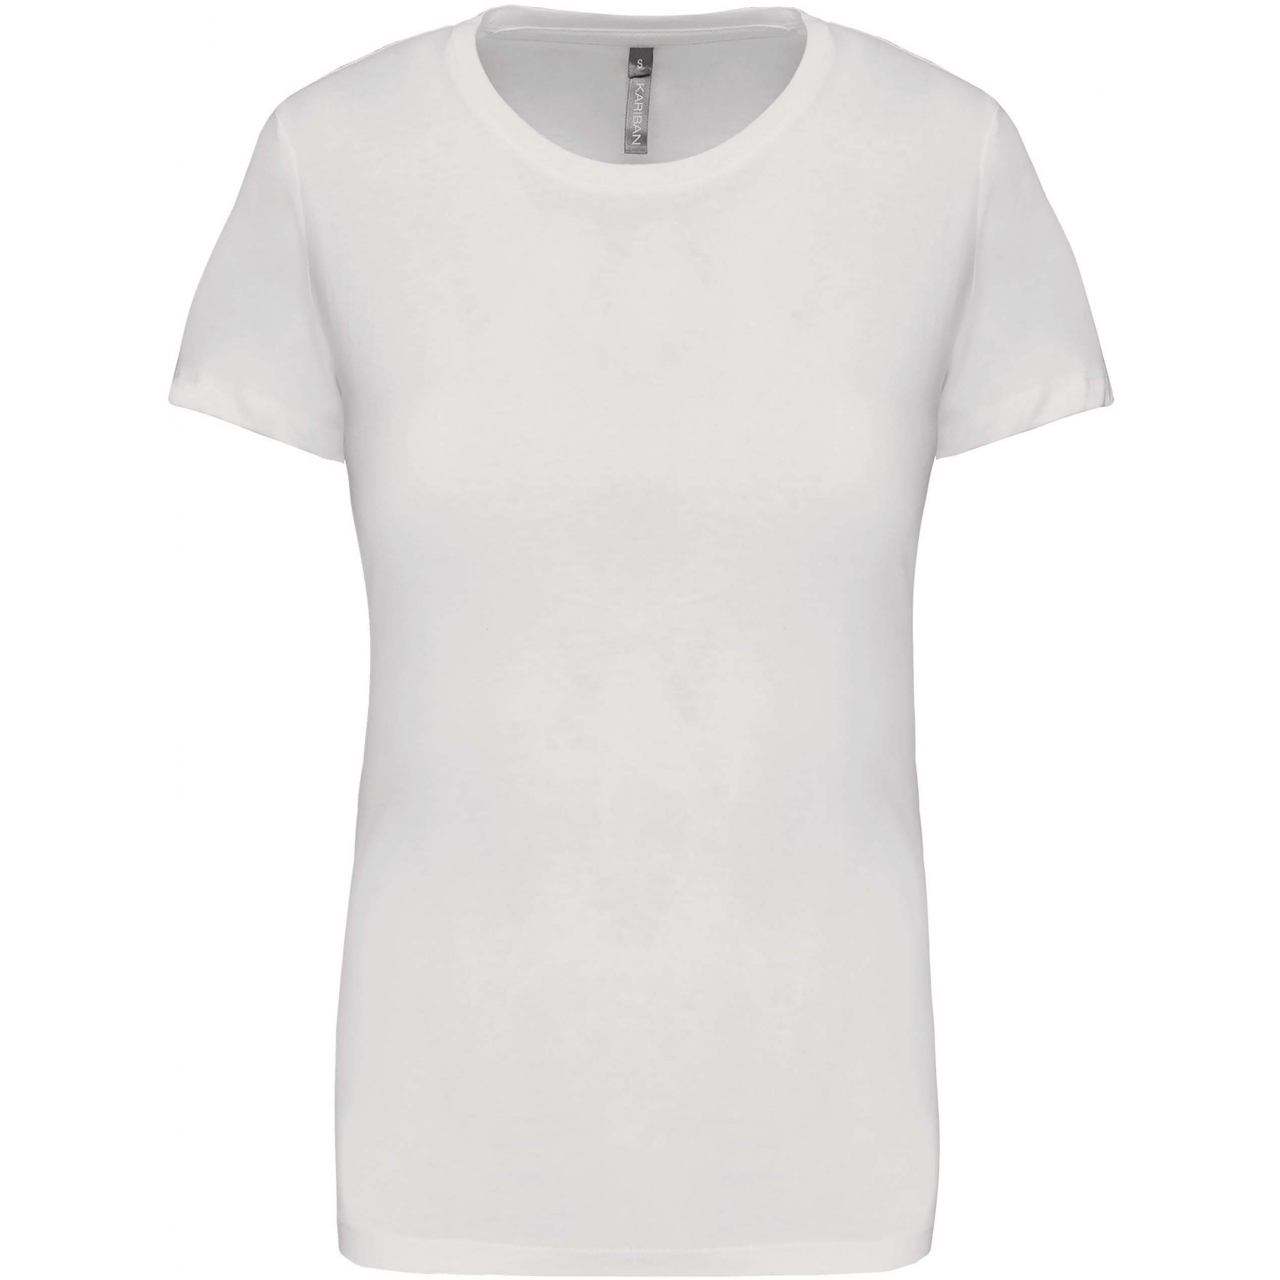 Dámské tričko Kariban s krátkým rukávem - bílé, XL